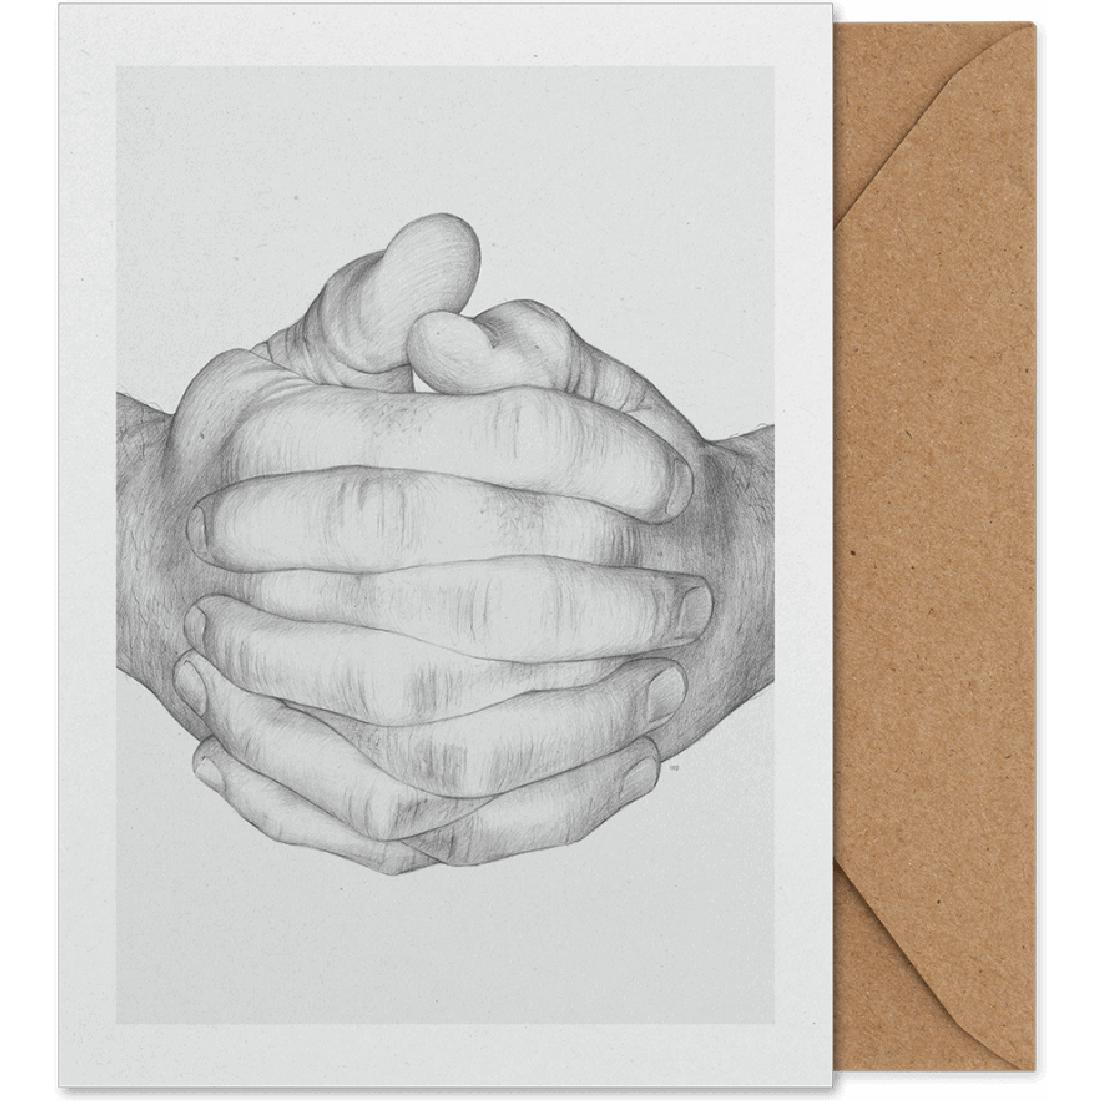 Karta umělecké karty s kolektivními rukama papíru